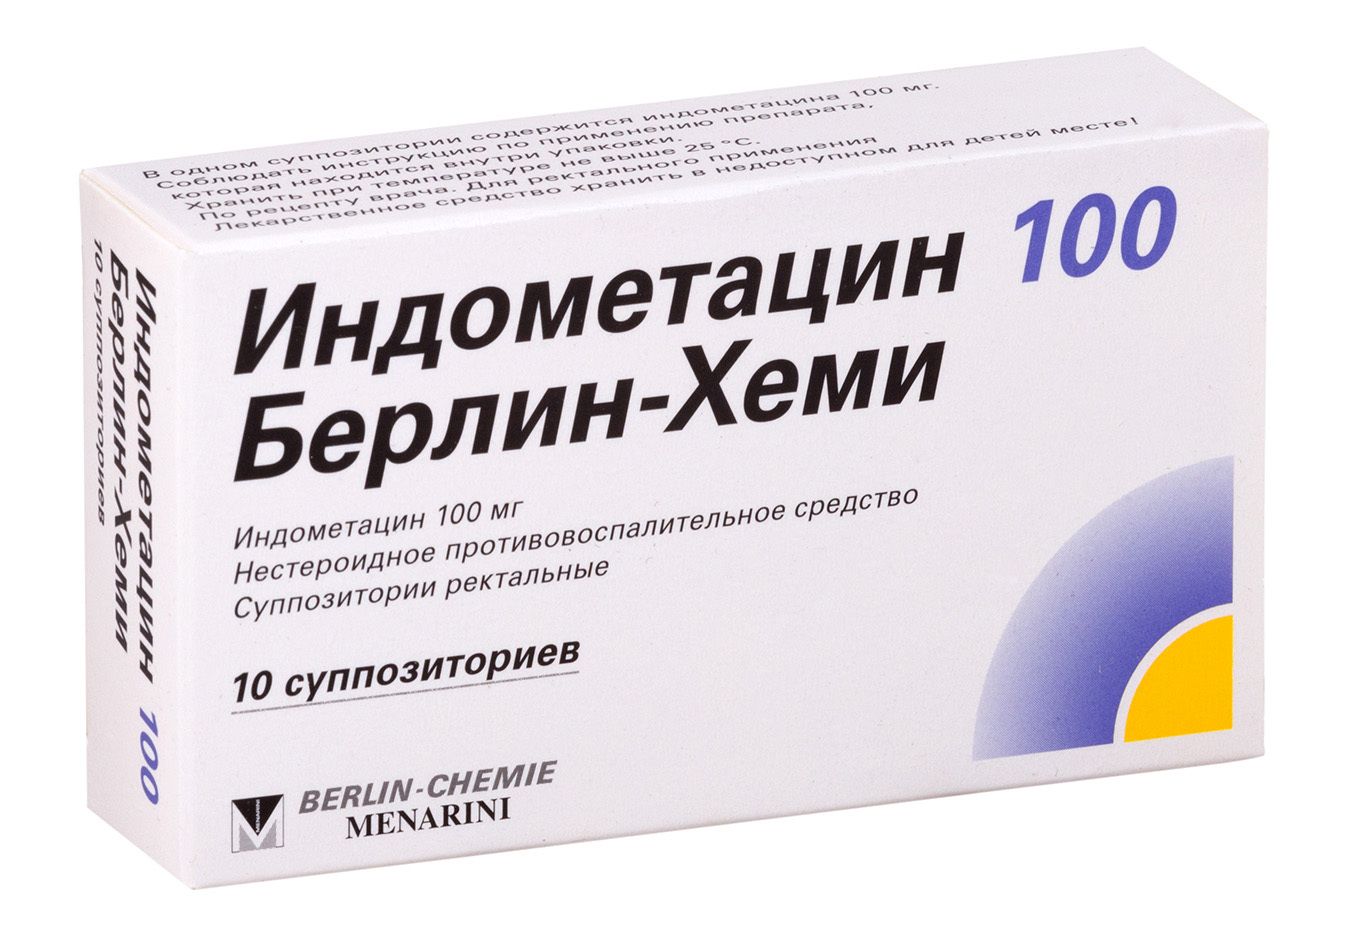 Индометацин 100-Берлин-Хеми, суппозитории ректальные 100 мг, 10 штук .